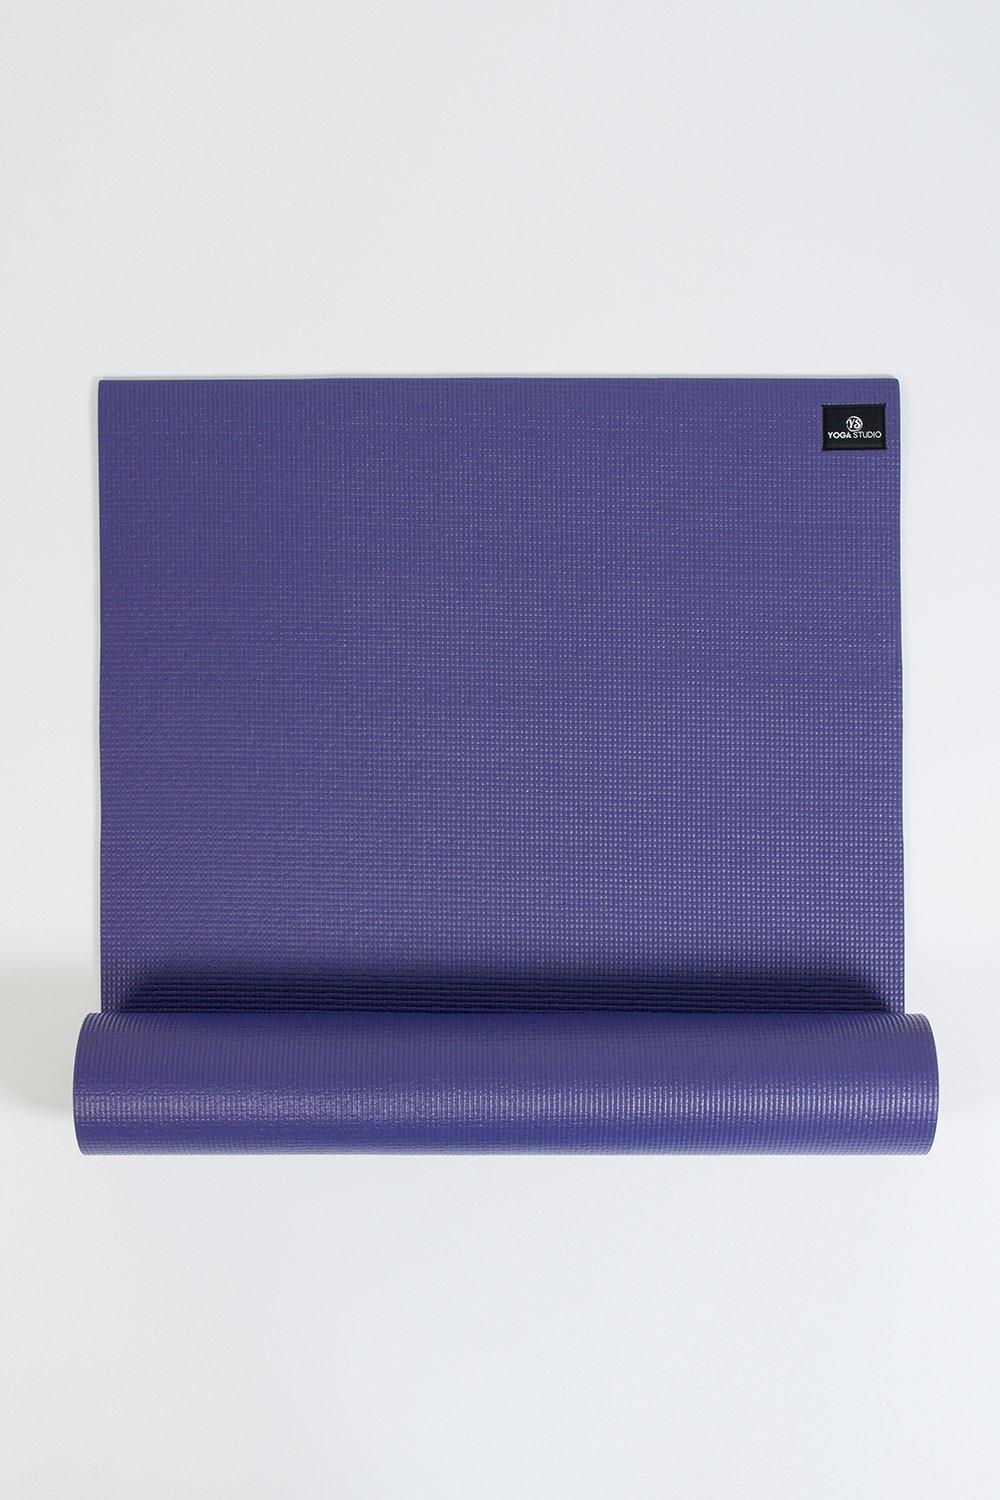 Yoga Studio Sticky Lite Yoga Mat 4.5mm|purple